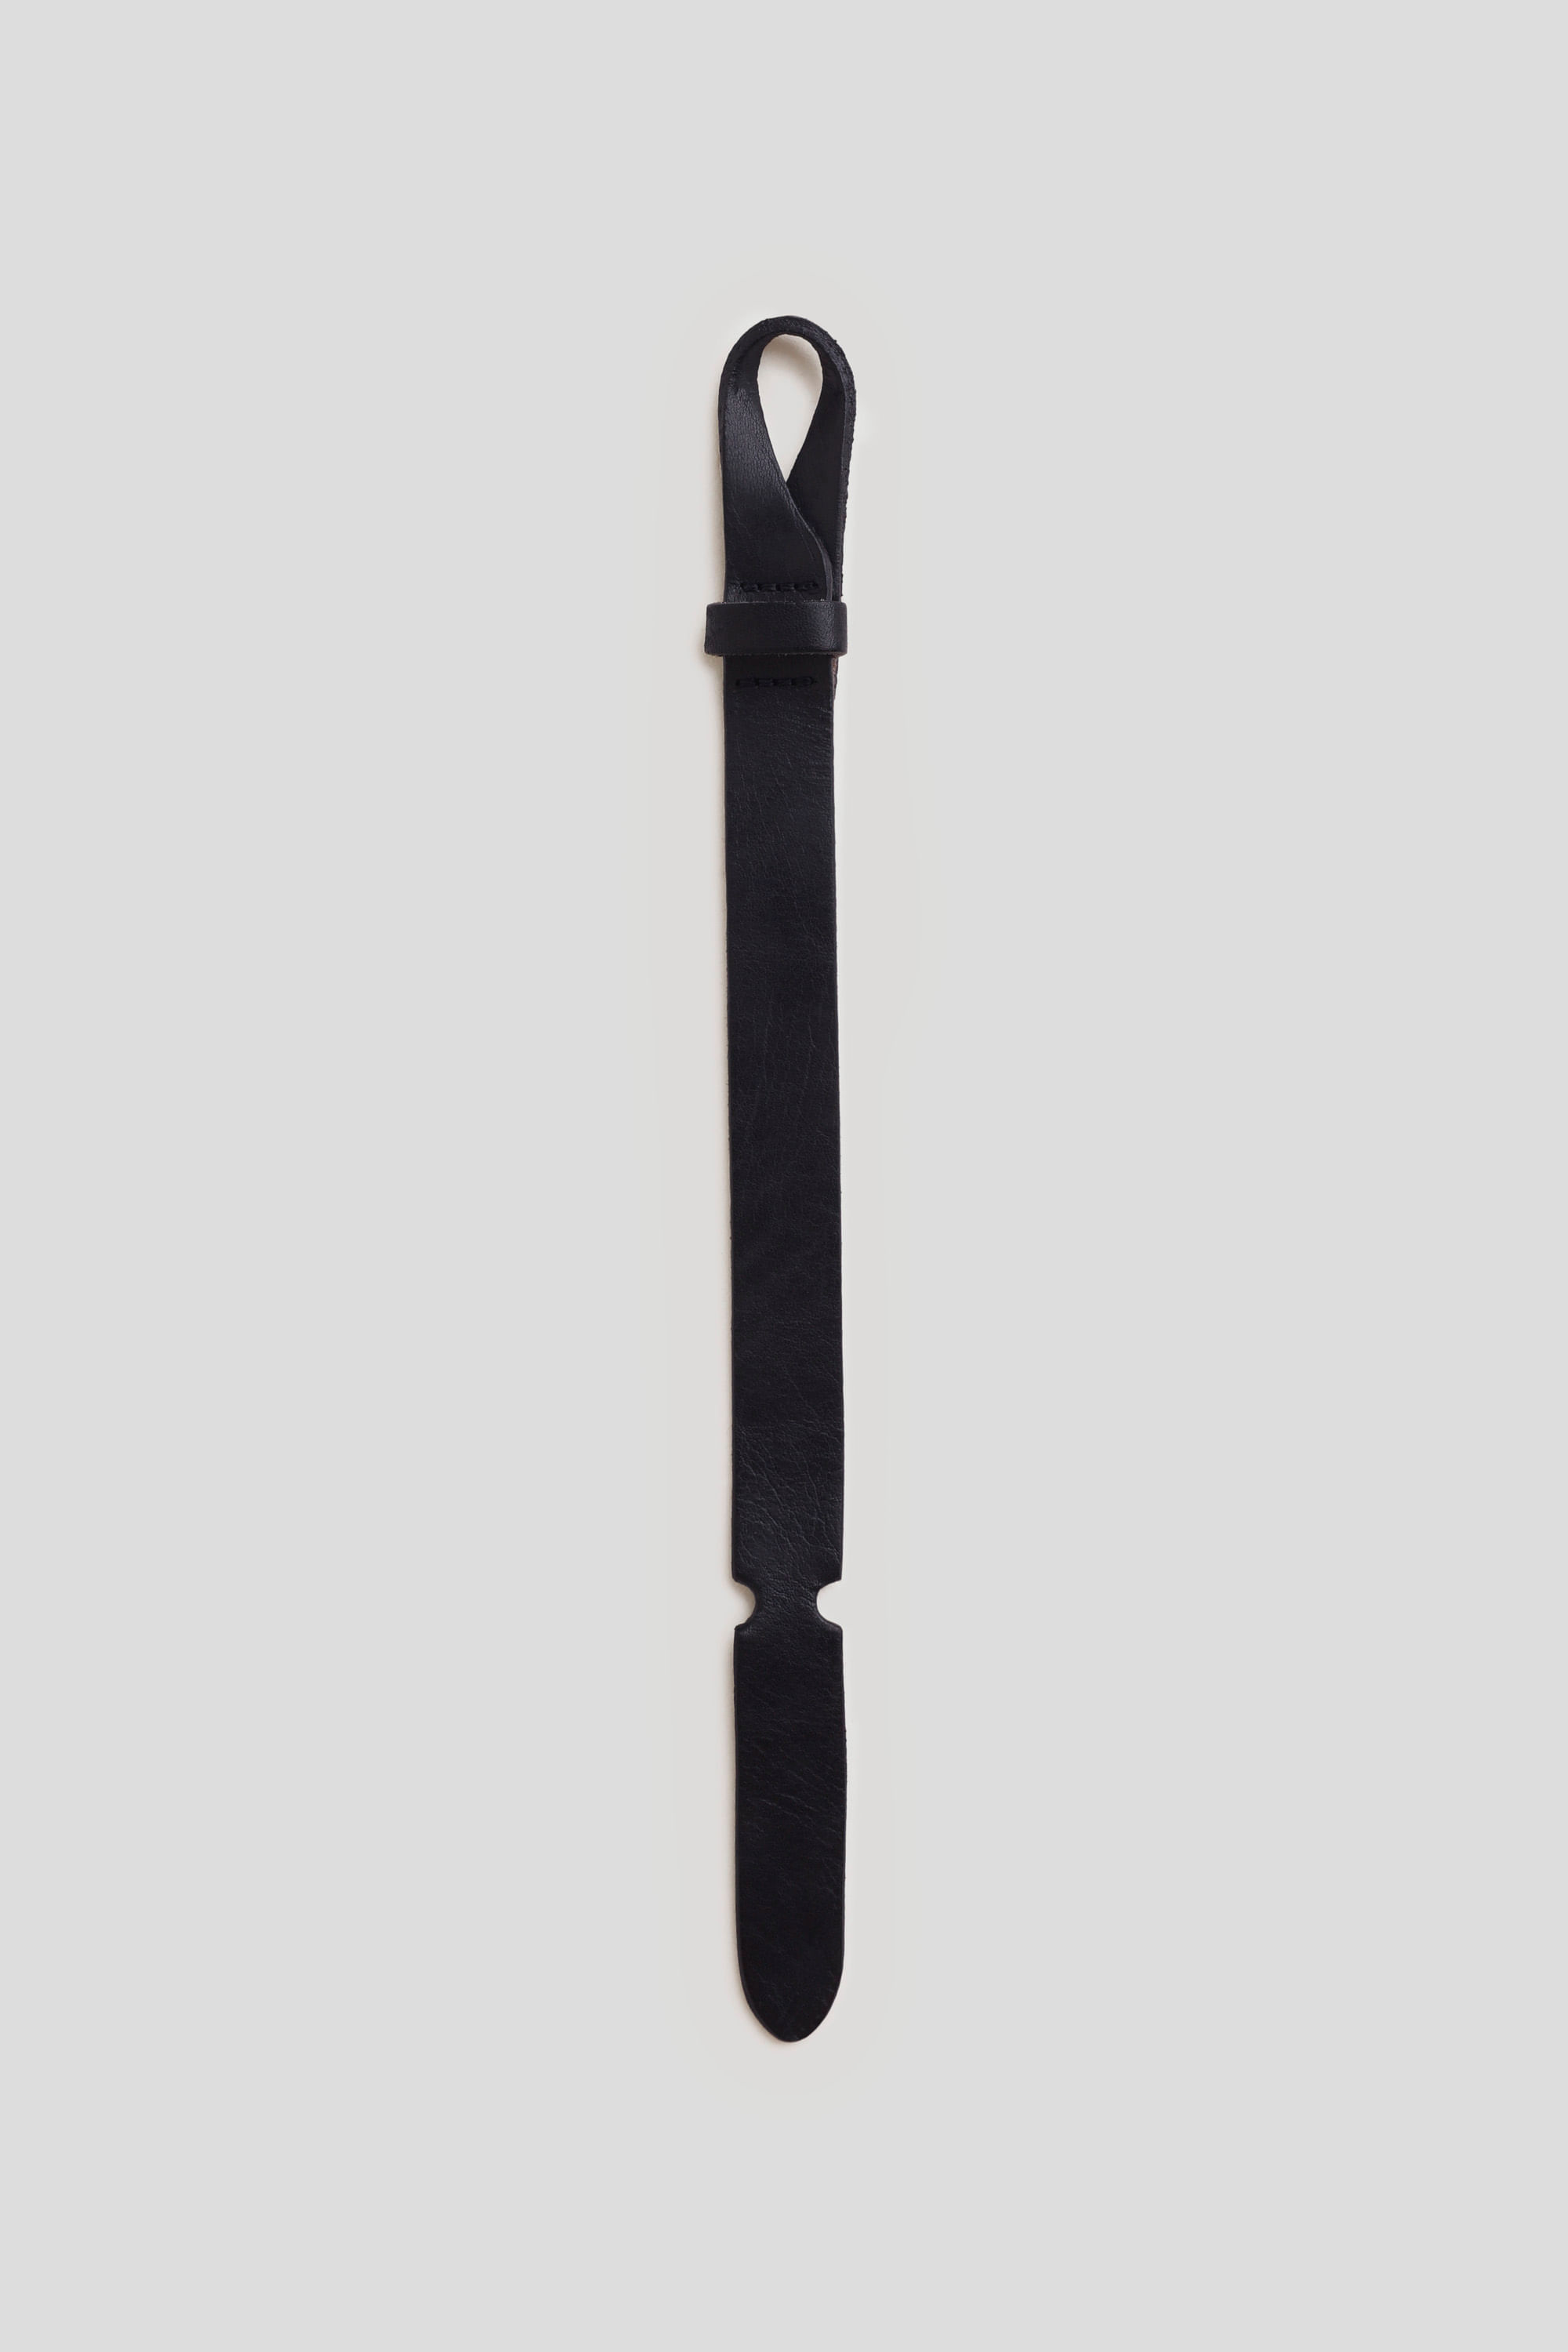 Pulseira Masculina de Couro Preto em Aço Preto - 20 cm Preto